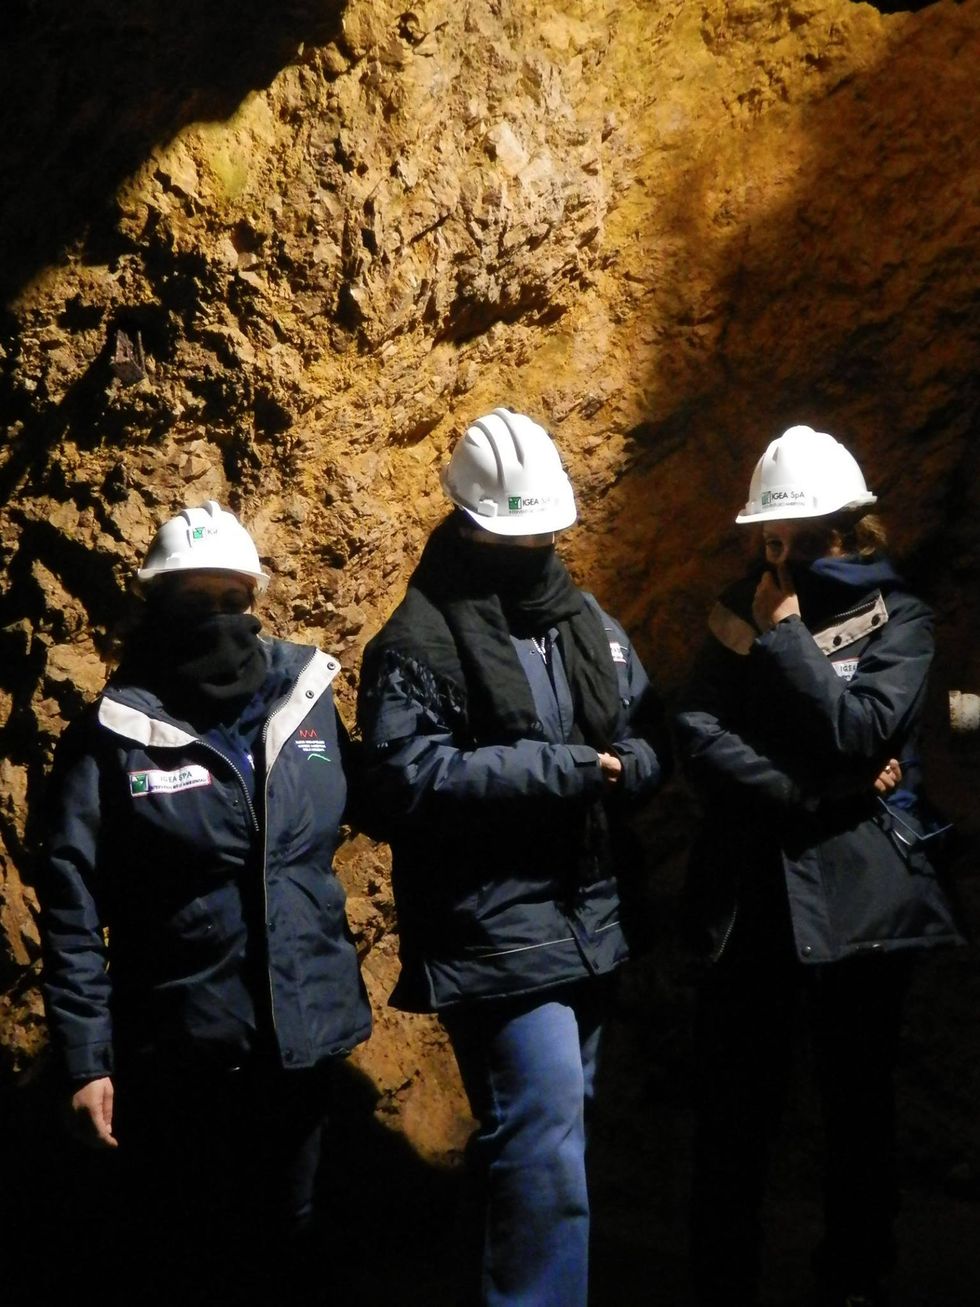 Le lavoratrici occupano la miniera, le foto